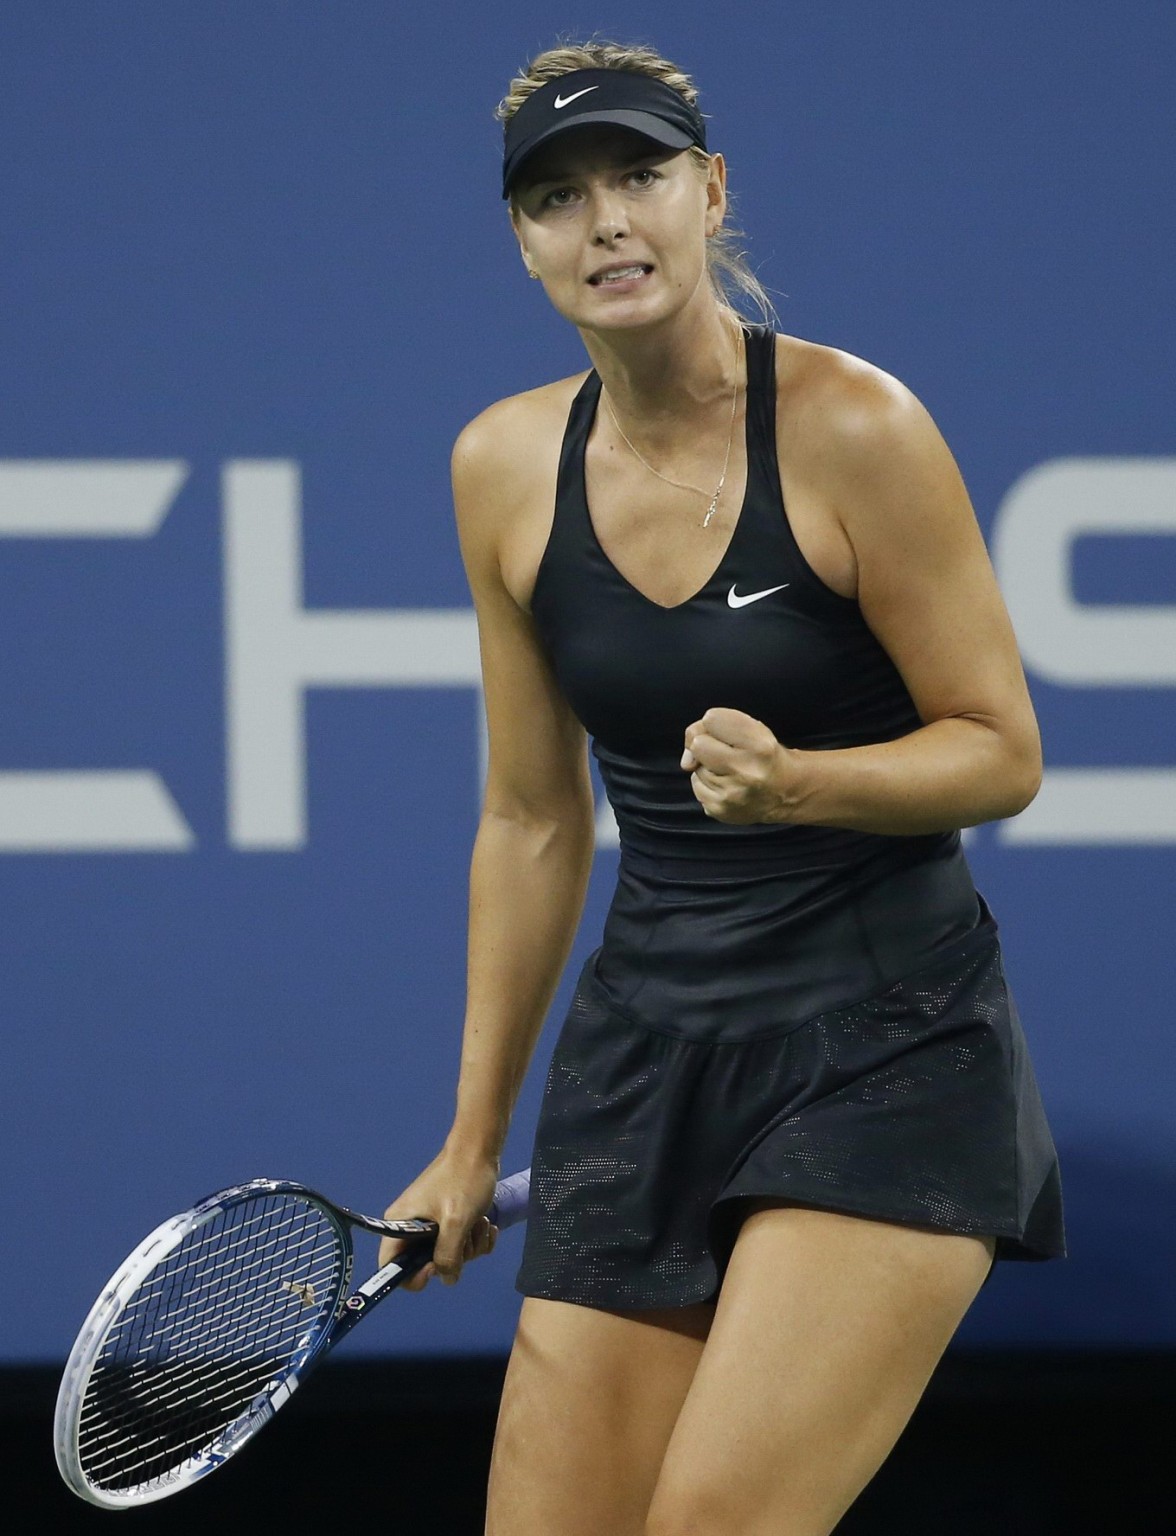 マリア・シャラポワ、ニューヨークで開催された全米オープンでアップスカートを披露
 #75186978